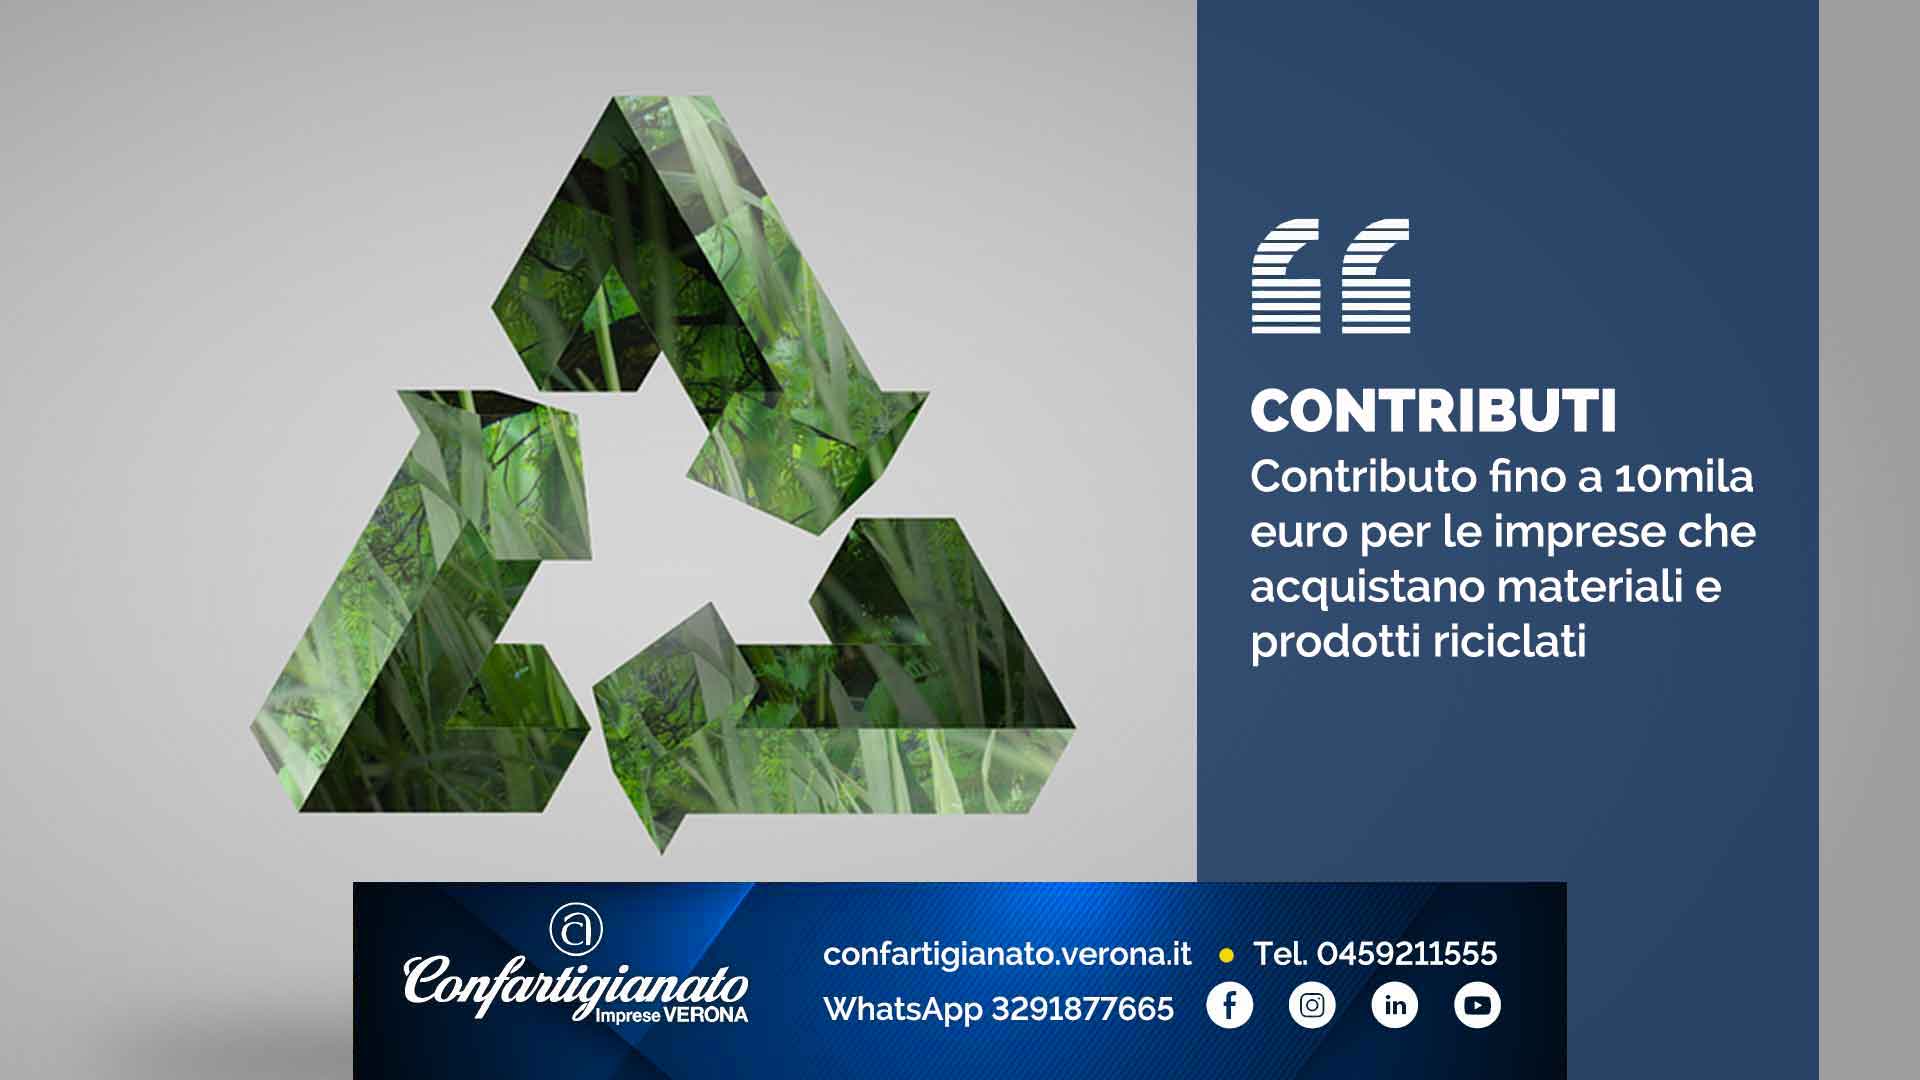 CONTRIBUTI – Contributo fino a 10mila euro per le imprese che acquistano materiali e prodotti riciclati